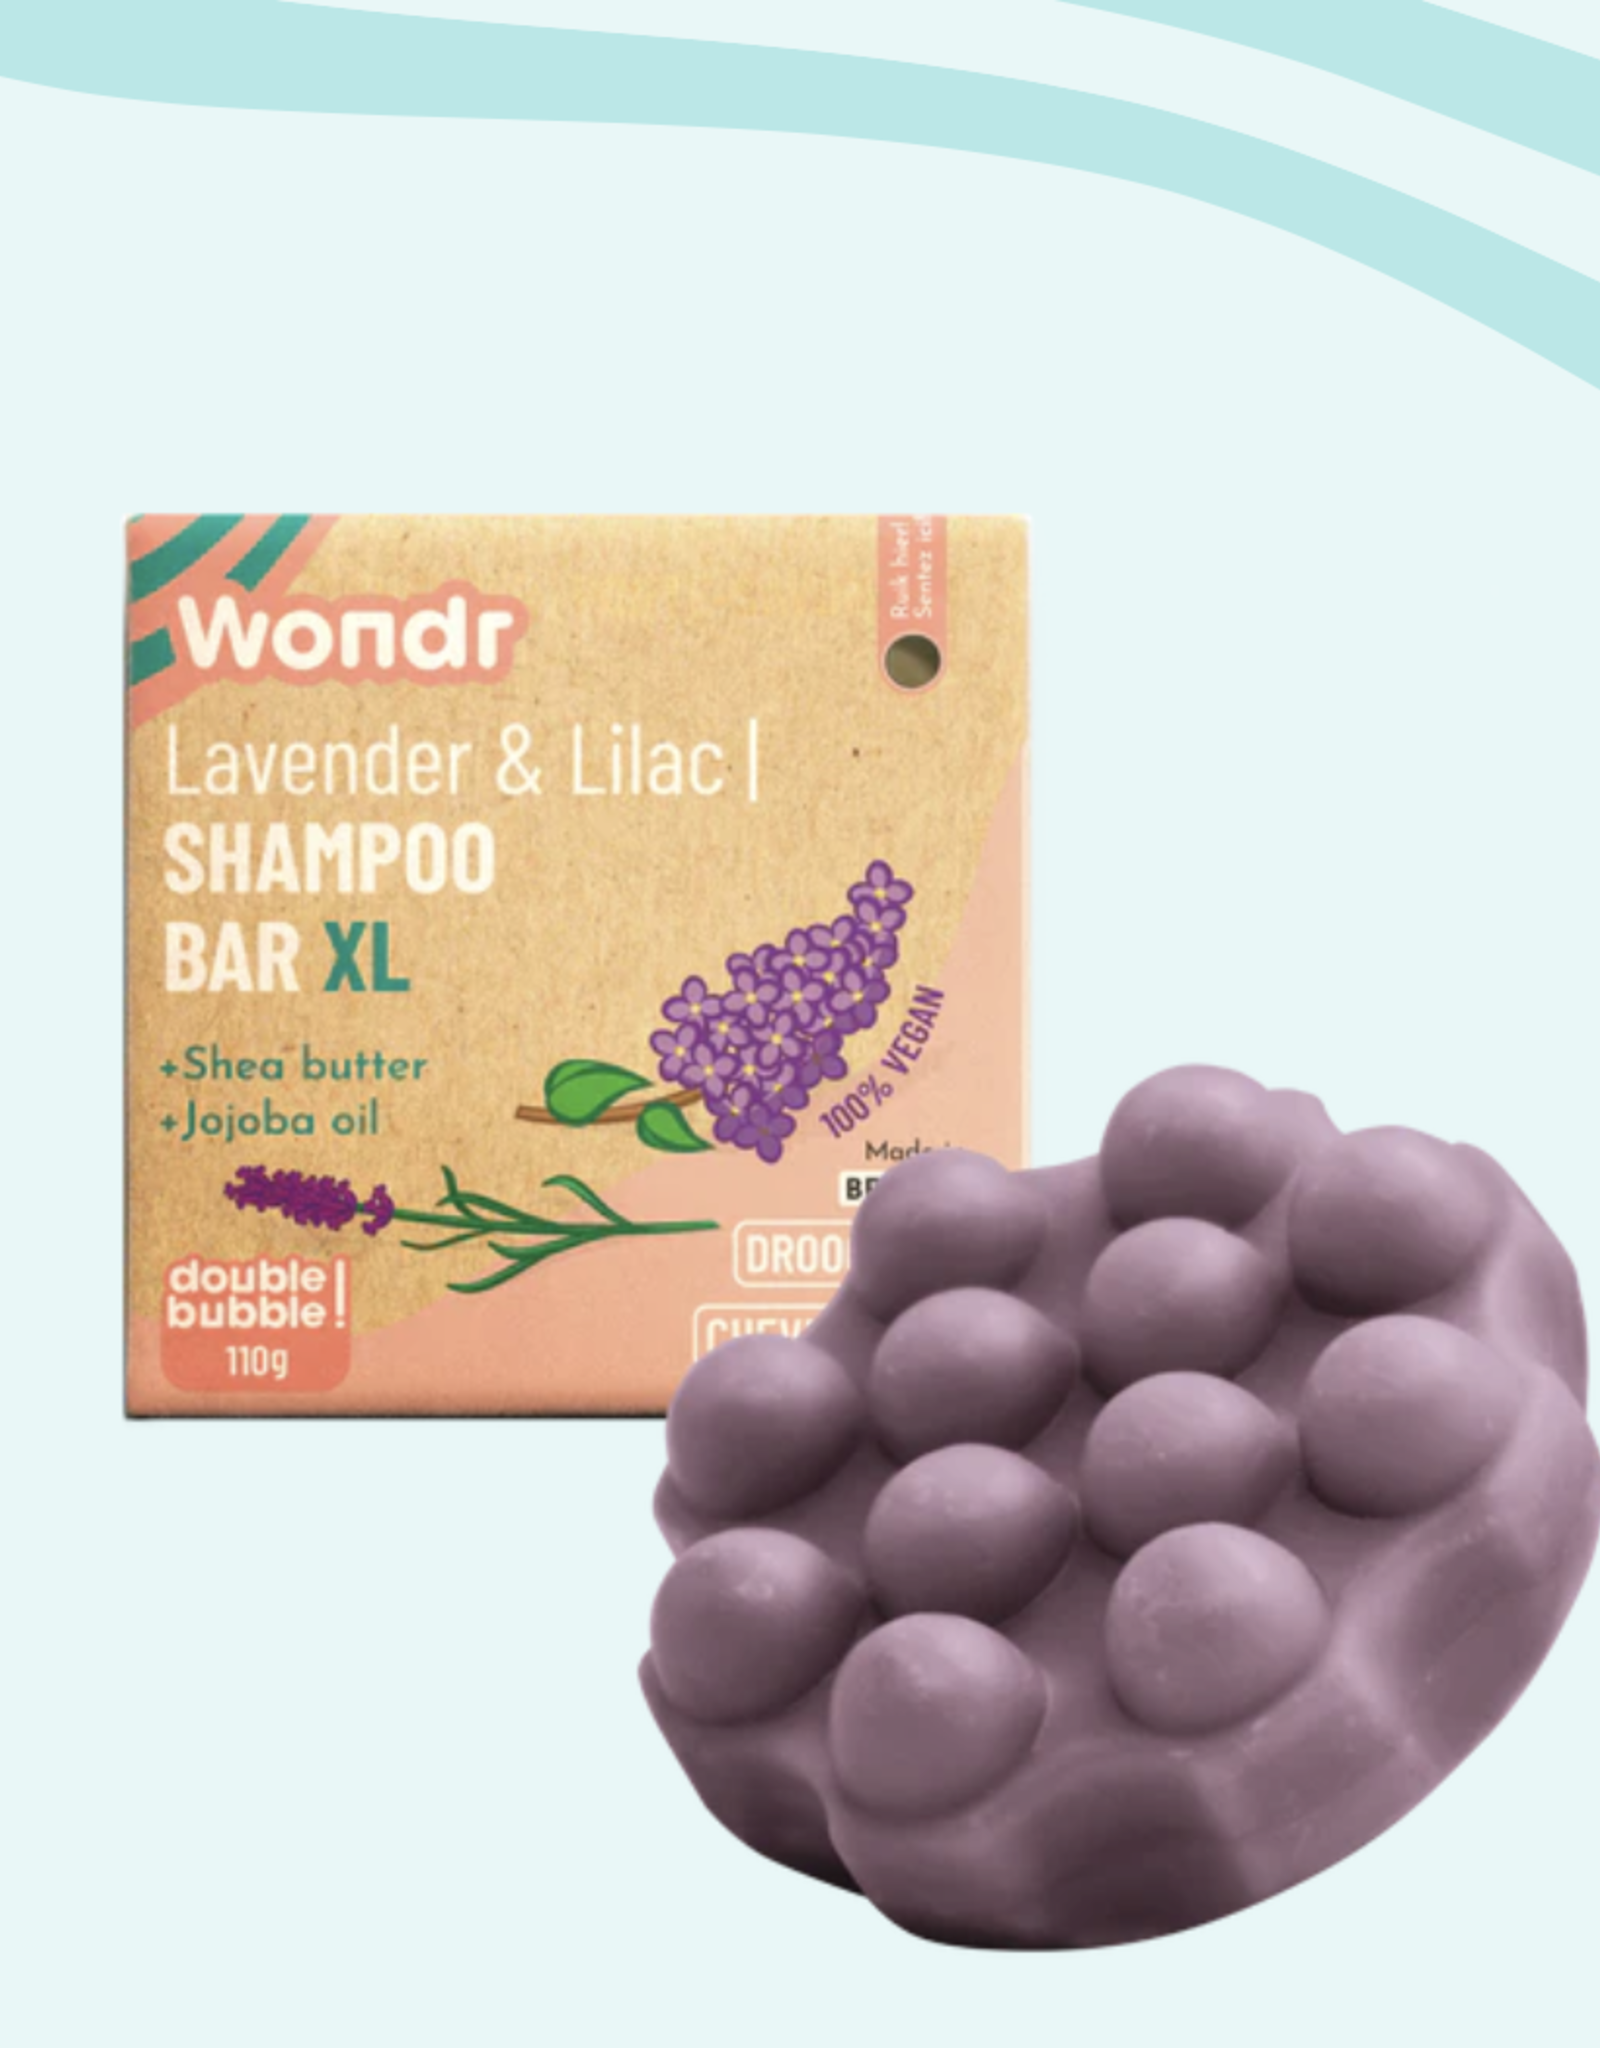 Wondr Shampoo bar Lavendel & Lilac | XL 110g